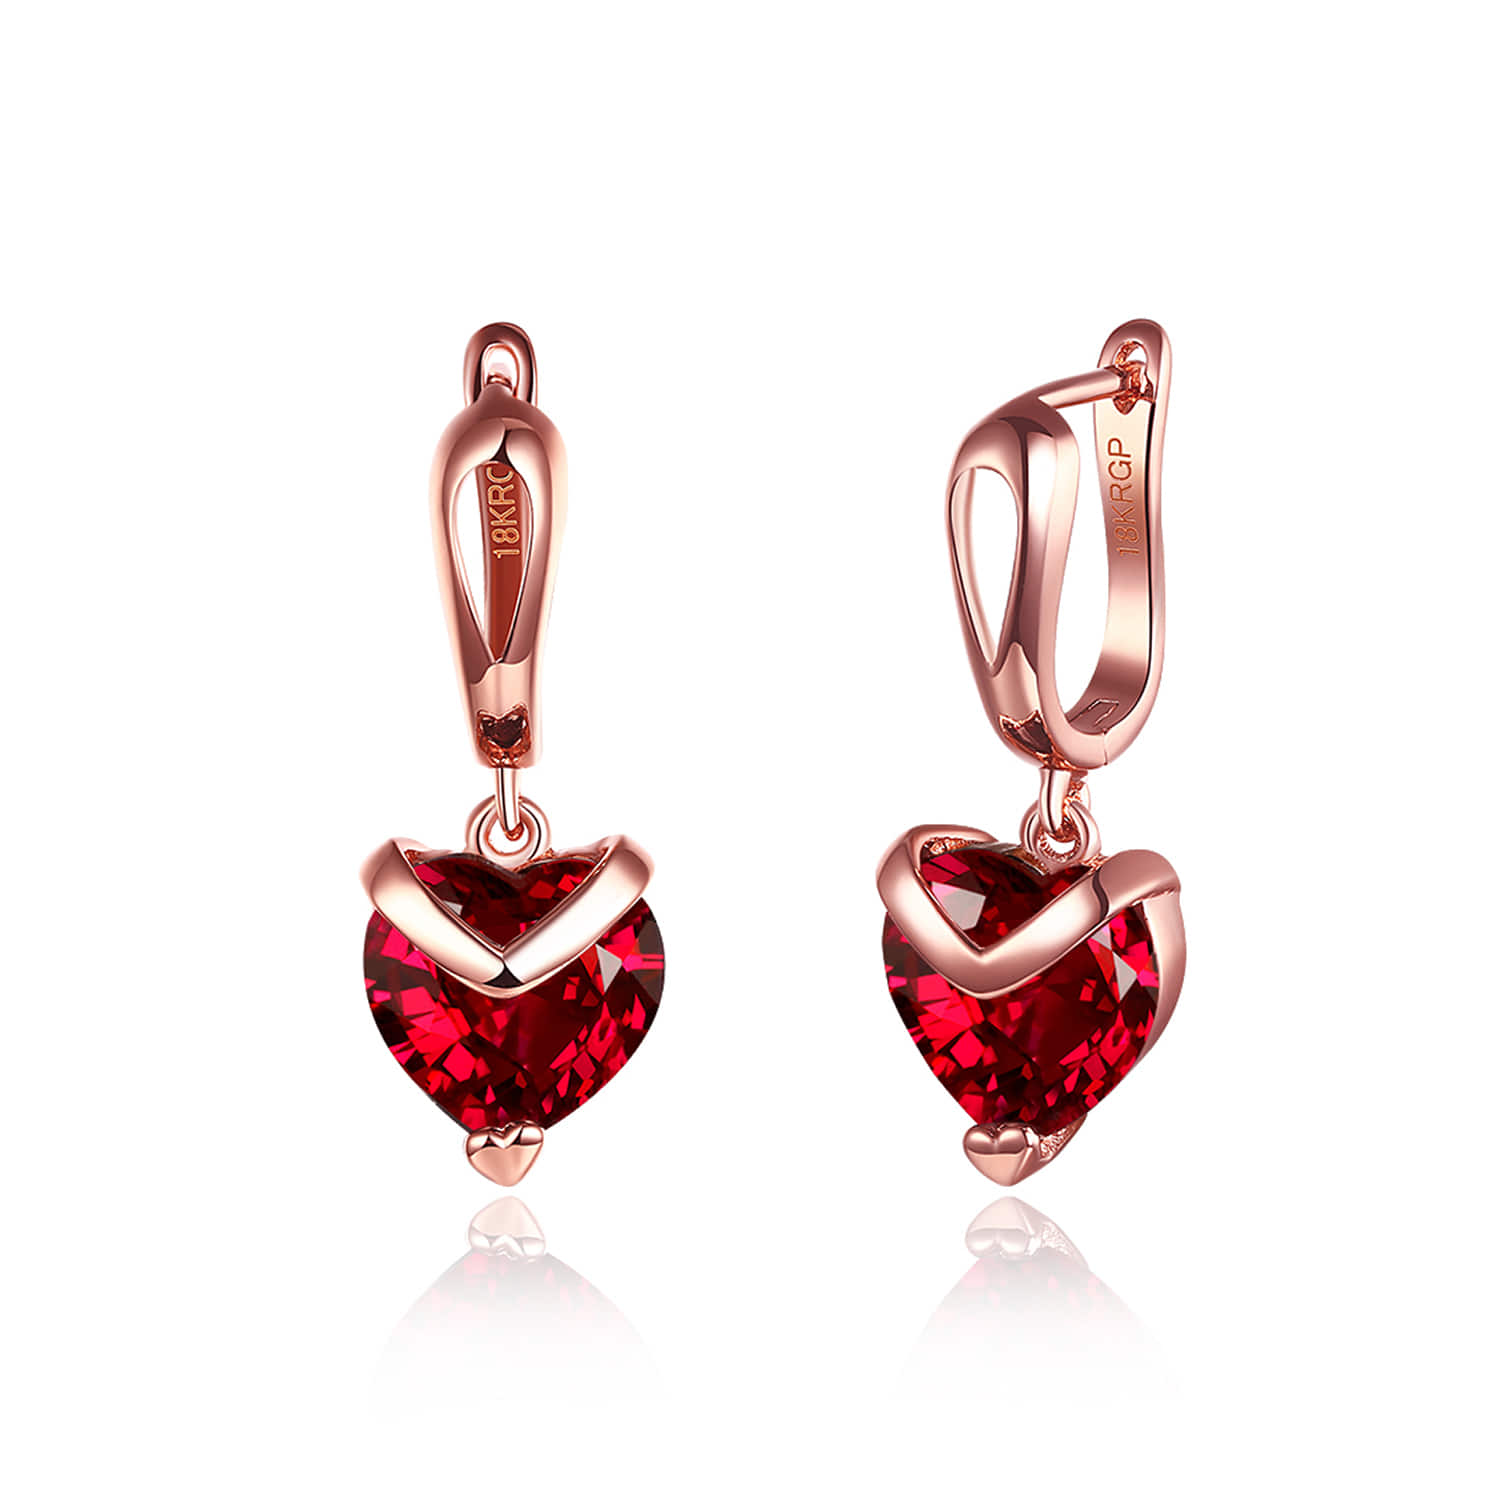 Golden Heart Drop Earrings | Red heart earrings, Earring trends, Heart drop  earrings